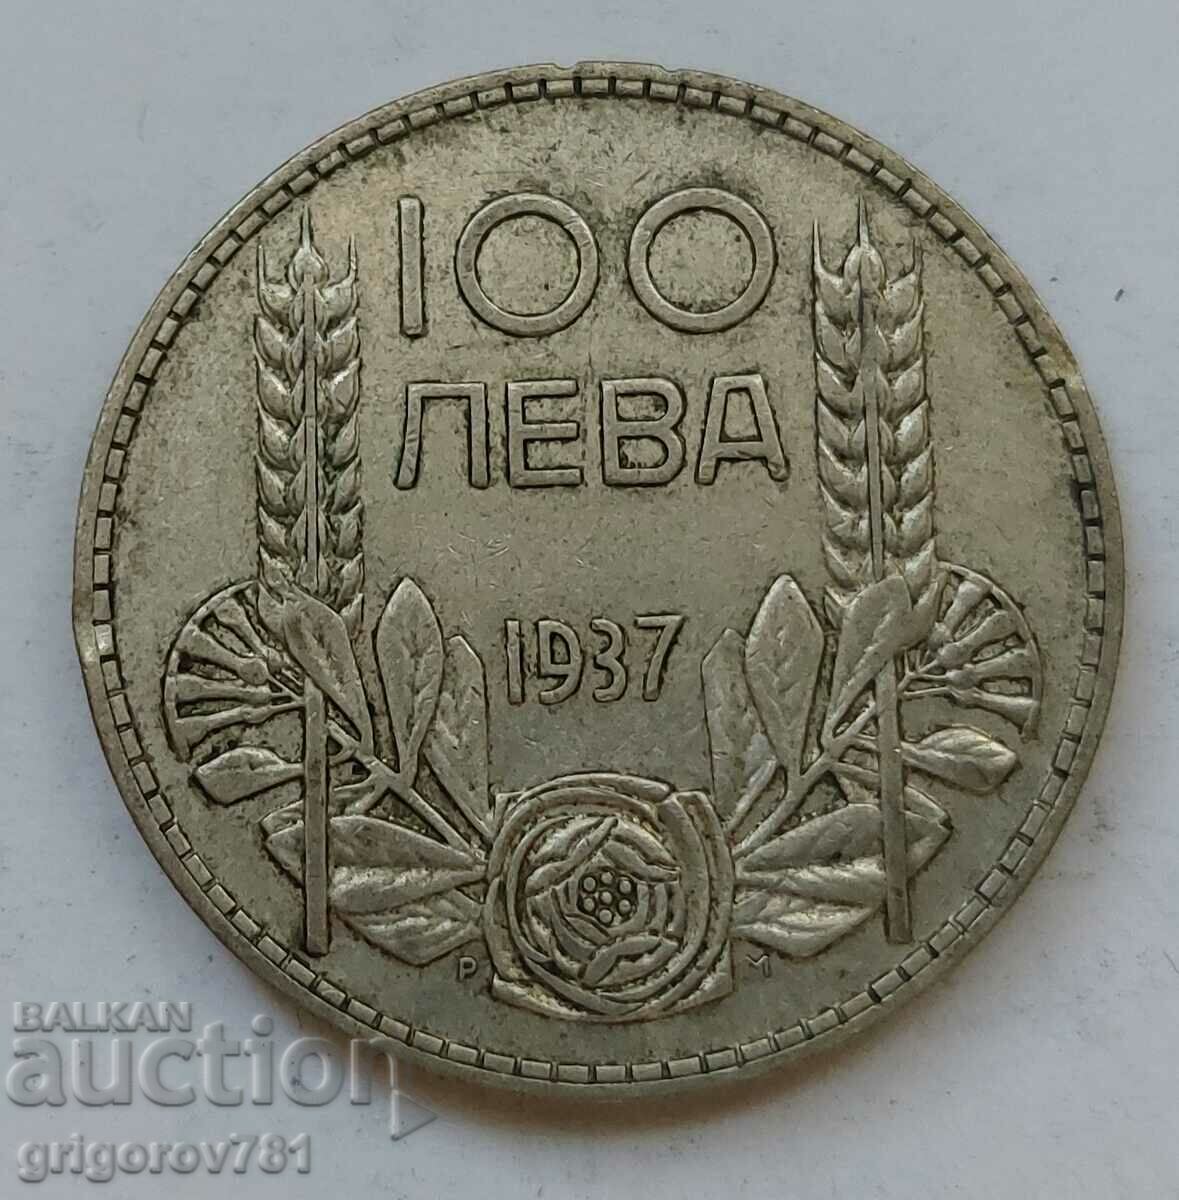 Ασήμι 100 λέβα Βουλγαρία 1937 - ασημένιο νόμισμα #144